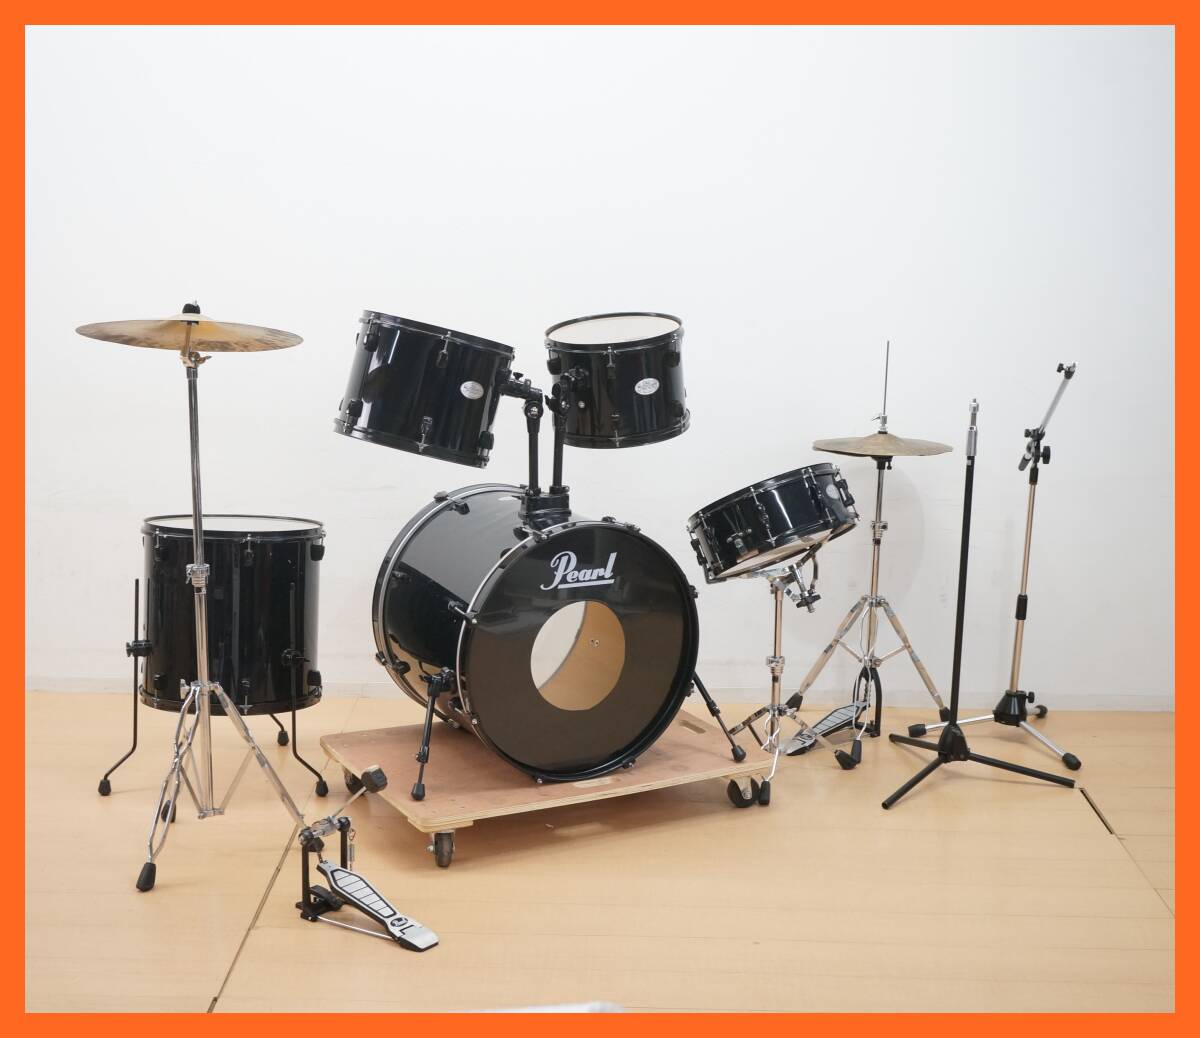 東ハ:【ドラムセット】Pearl パール SOUNDCHECK Series Drums サウンドチェック セット / スタンド2種セット ★送料無料★の画像1